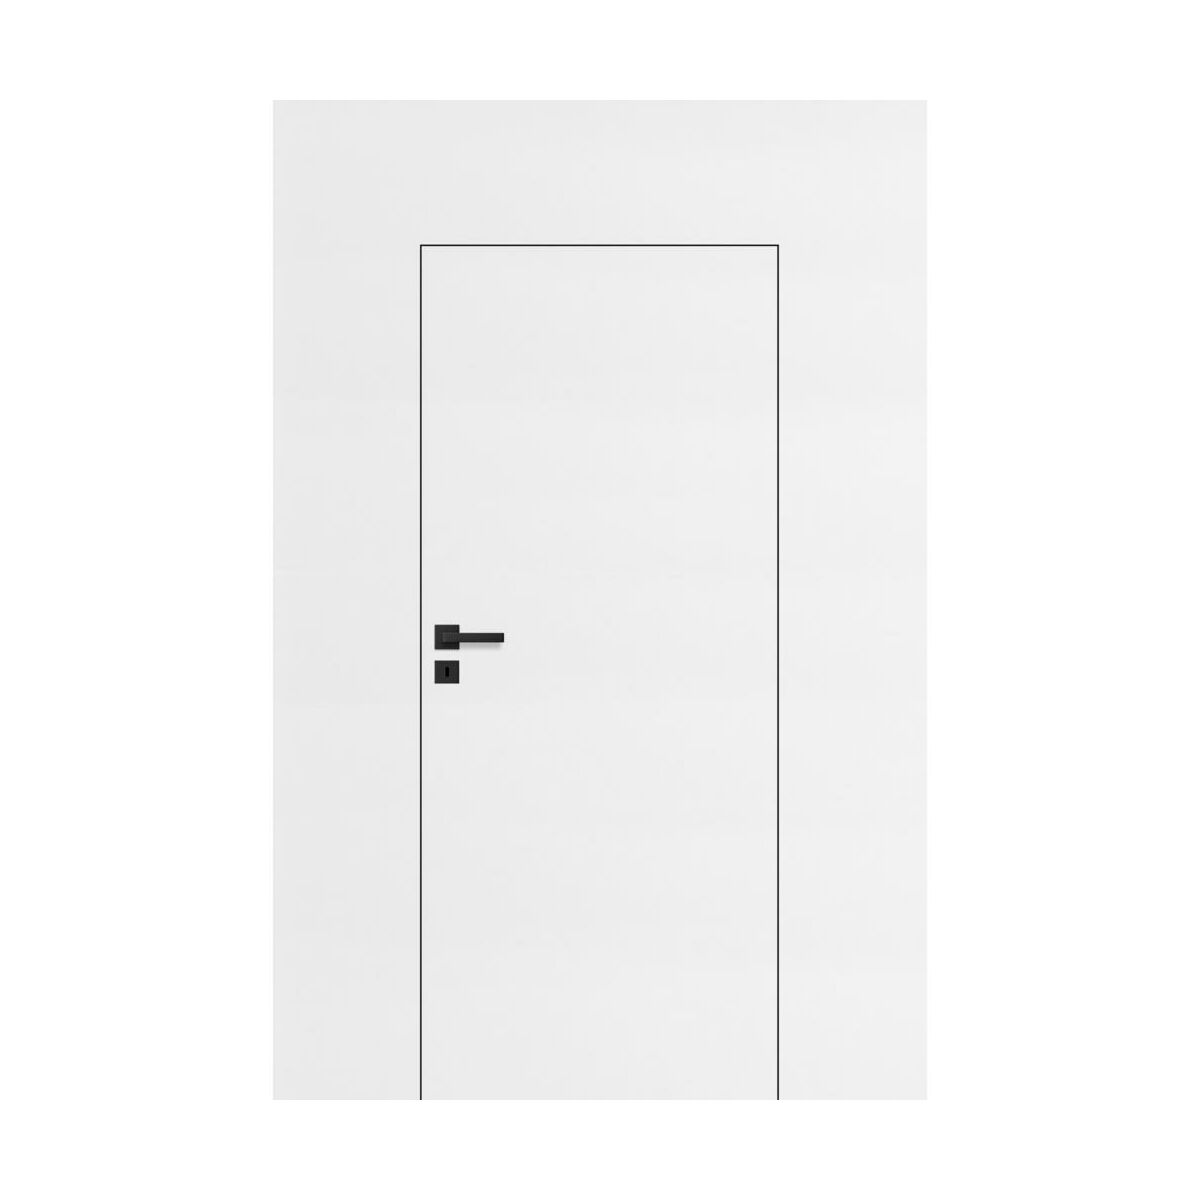 Drzwi wewnętrzne ukryte pełne 90 Prawe otwierane do wewnątrz białe do malowania